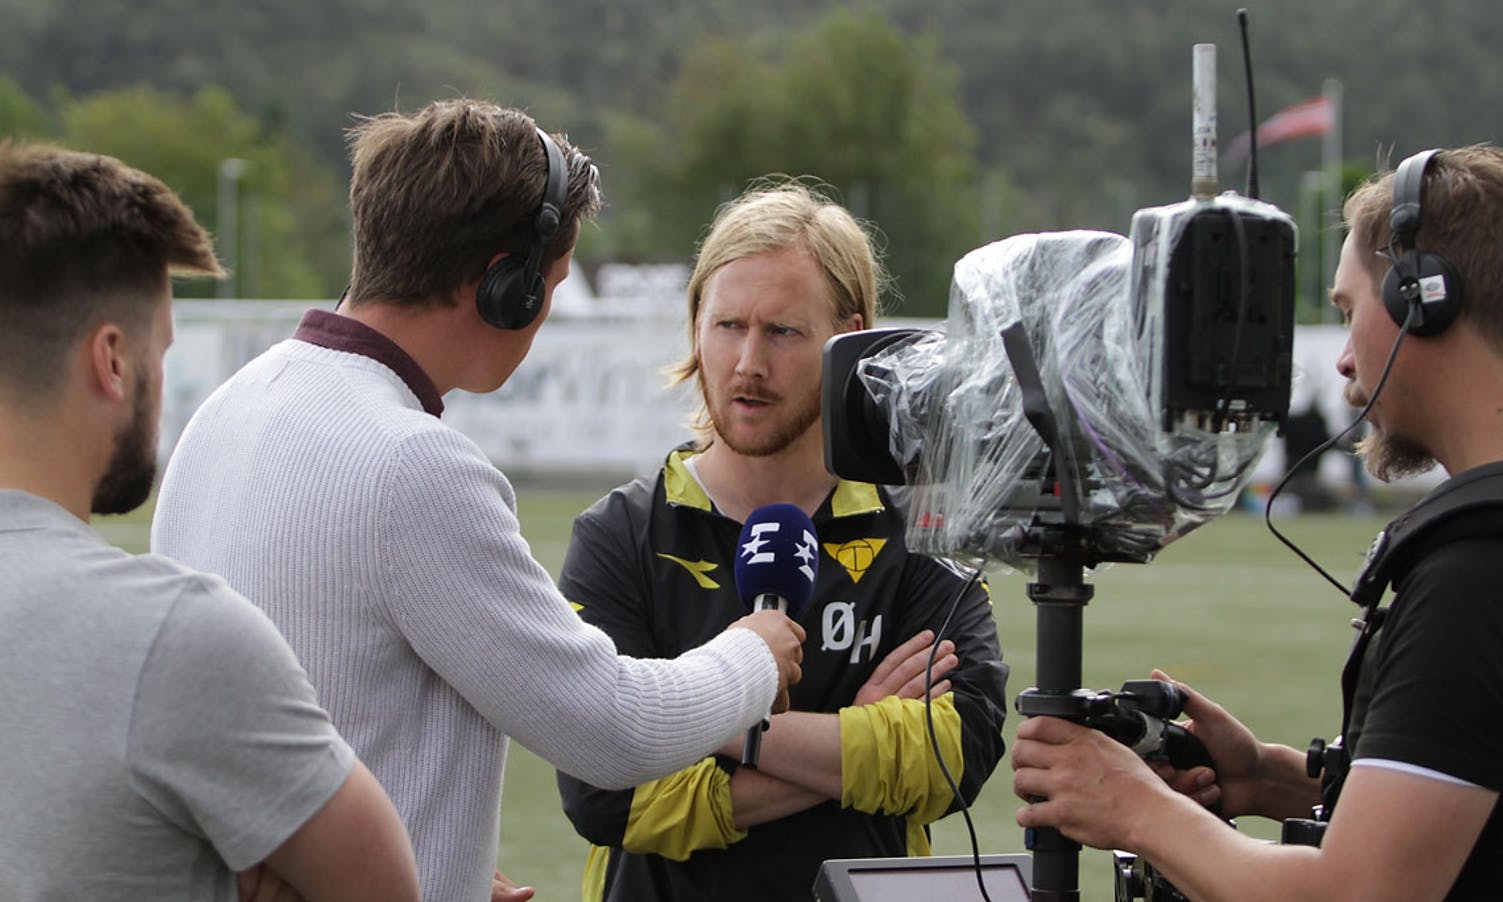 Eurosport intervjua trenarane før start på 2. omg. (Foto: KVB)